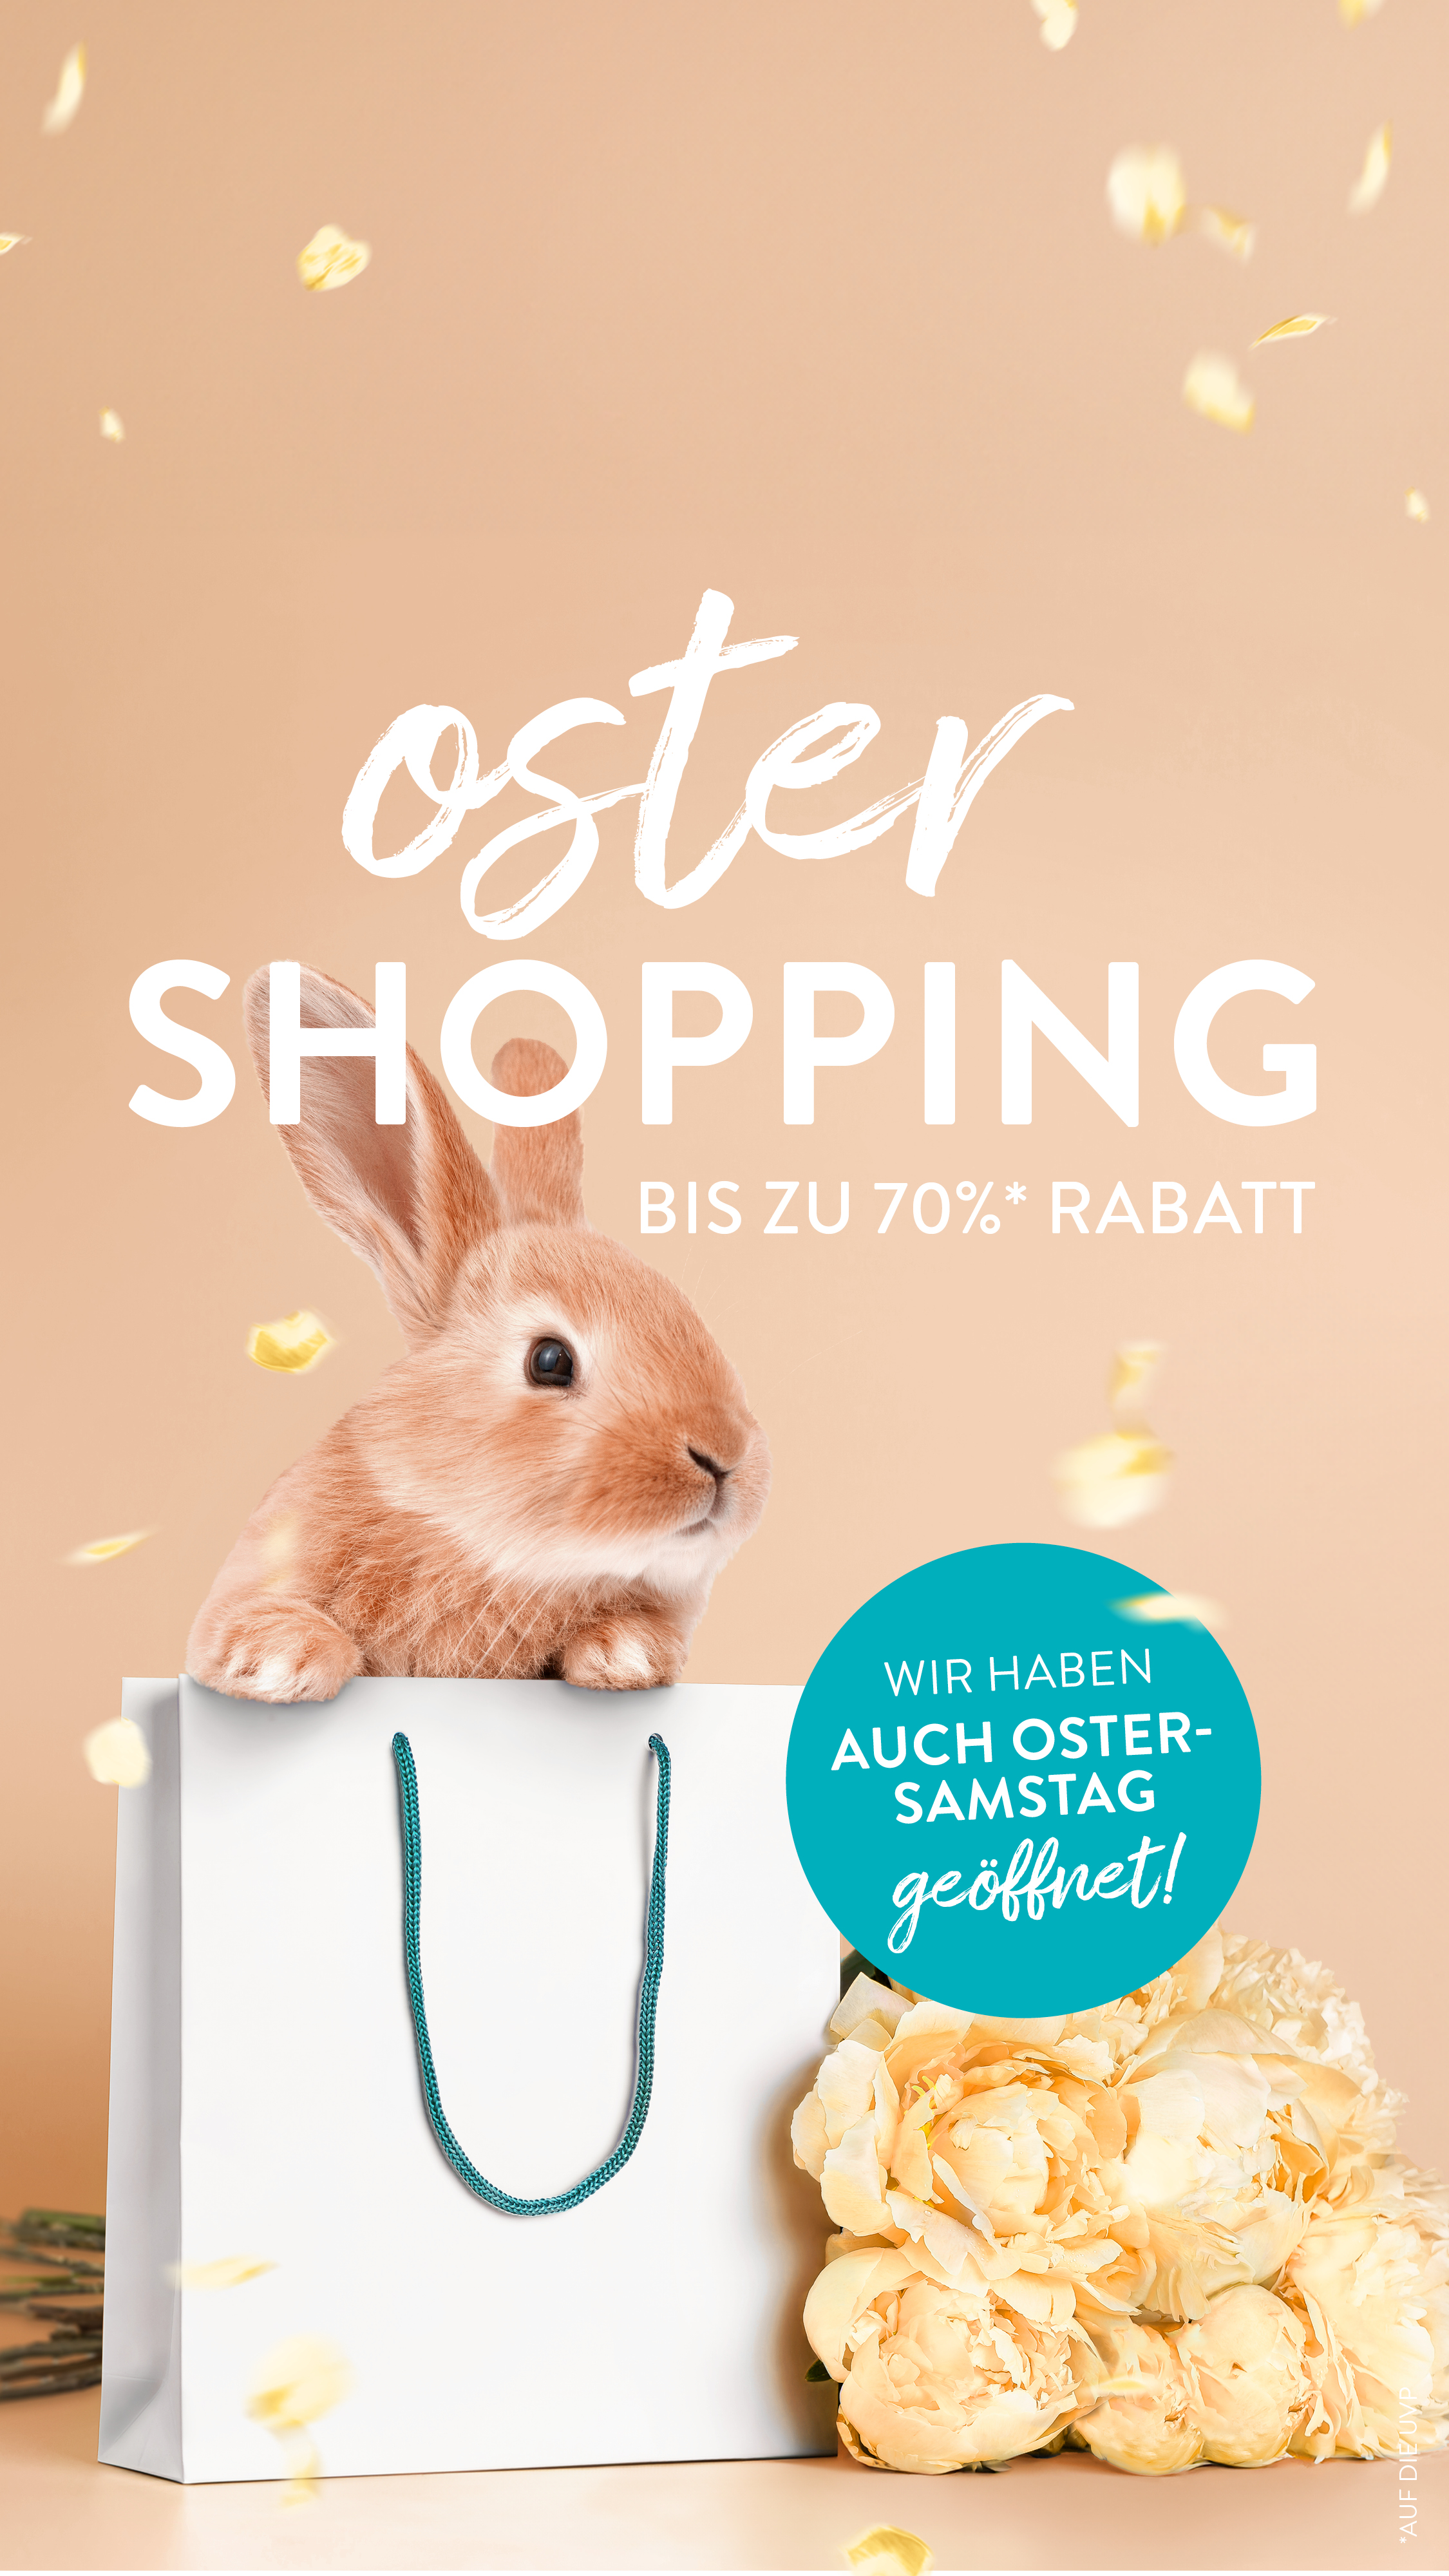 Oster Shopping - Bis zu 70% Rabatt